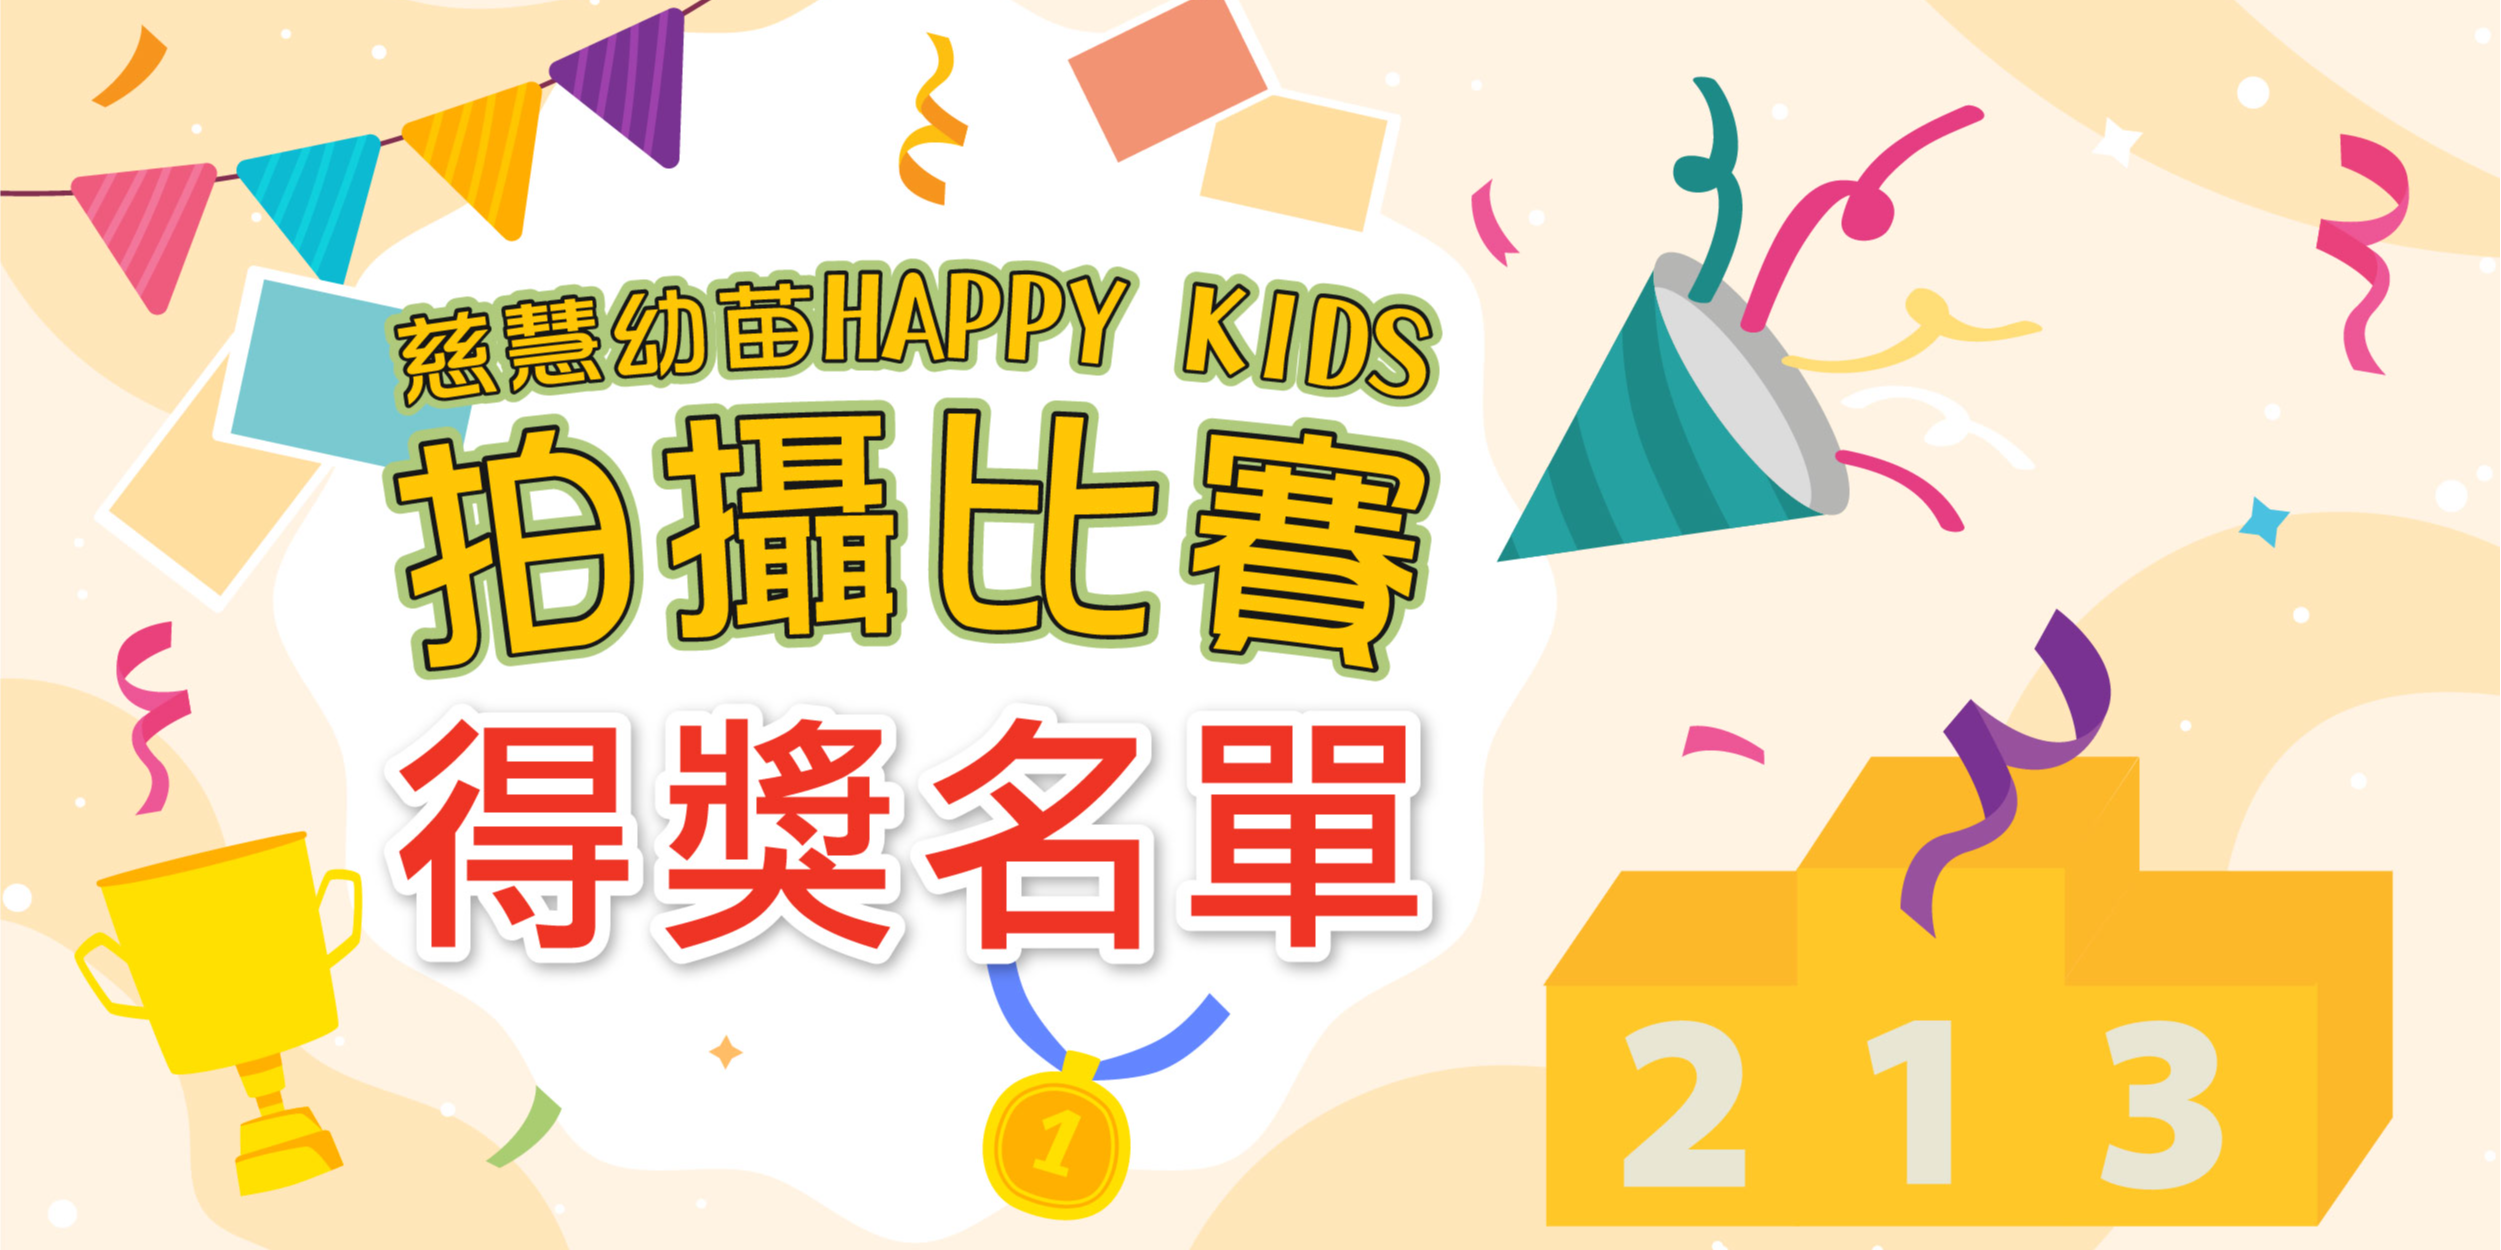 慈慧幼苗Happy Kids拍攝比賽 - 得獎名單